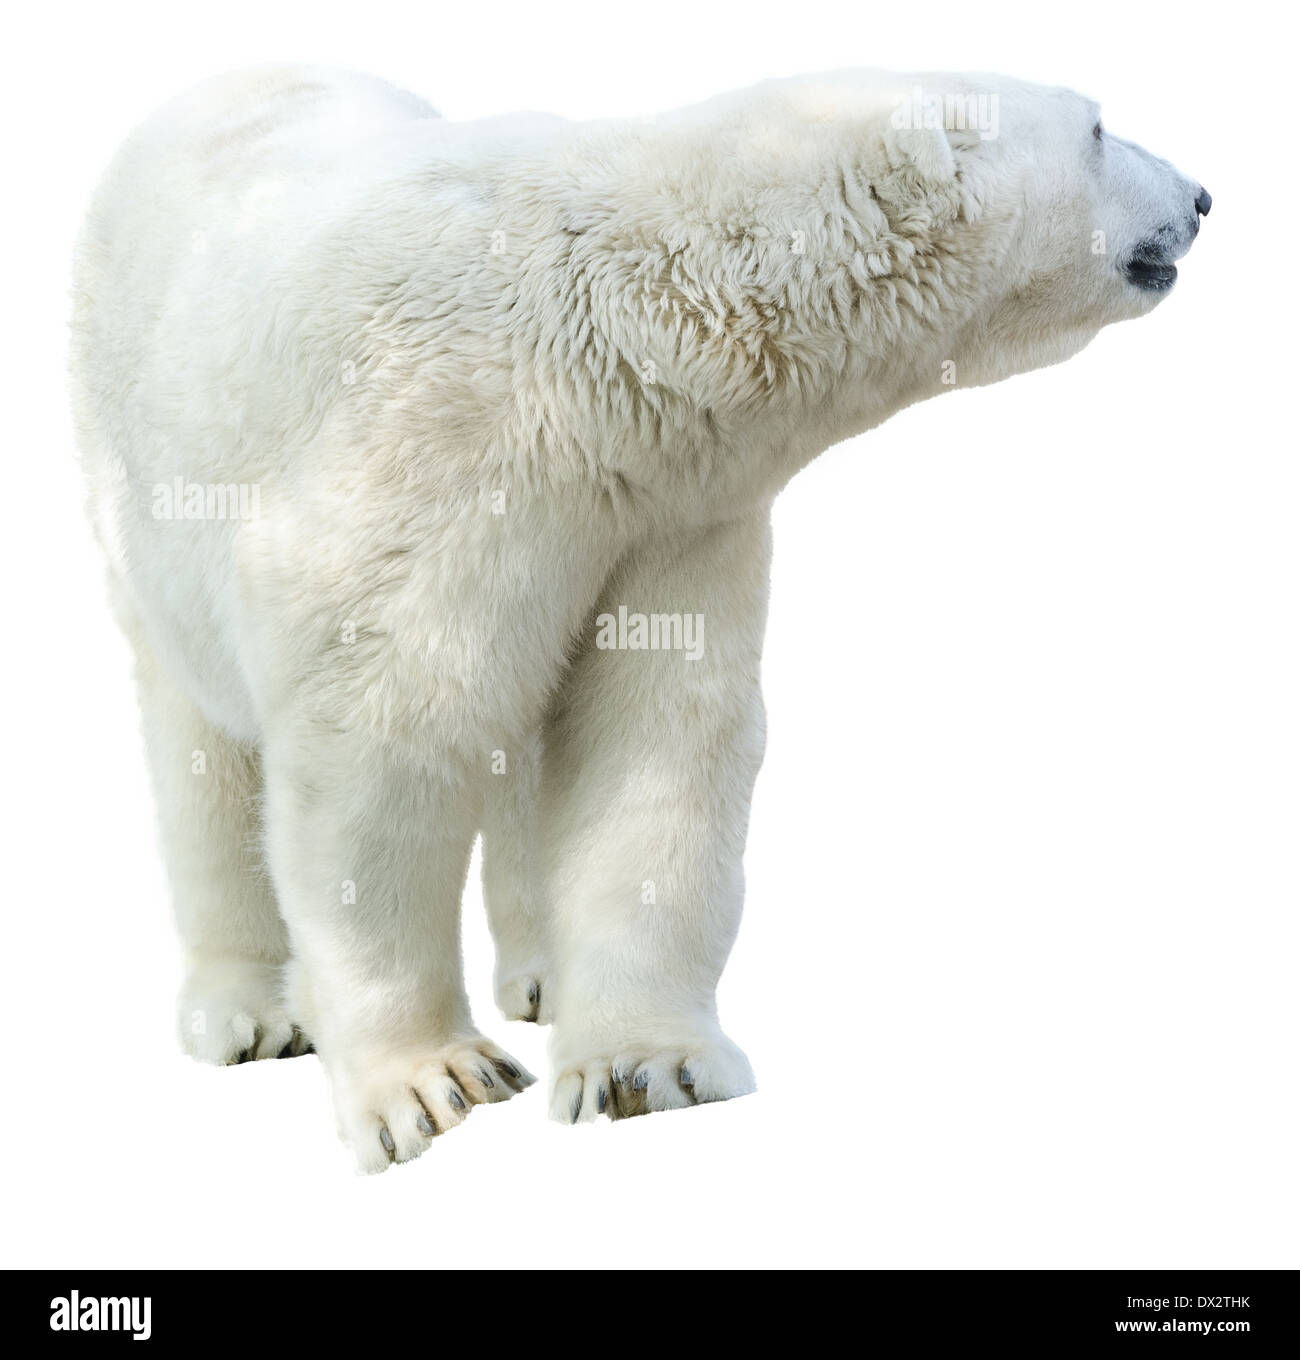 La figure d'un ours polaire. L'isolement sur fond blanc Banque D'Images